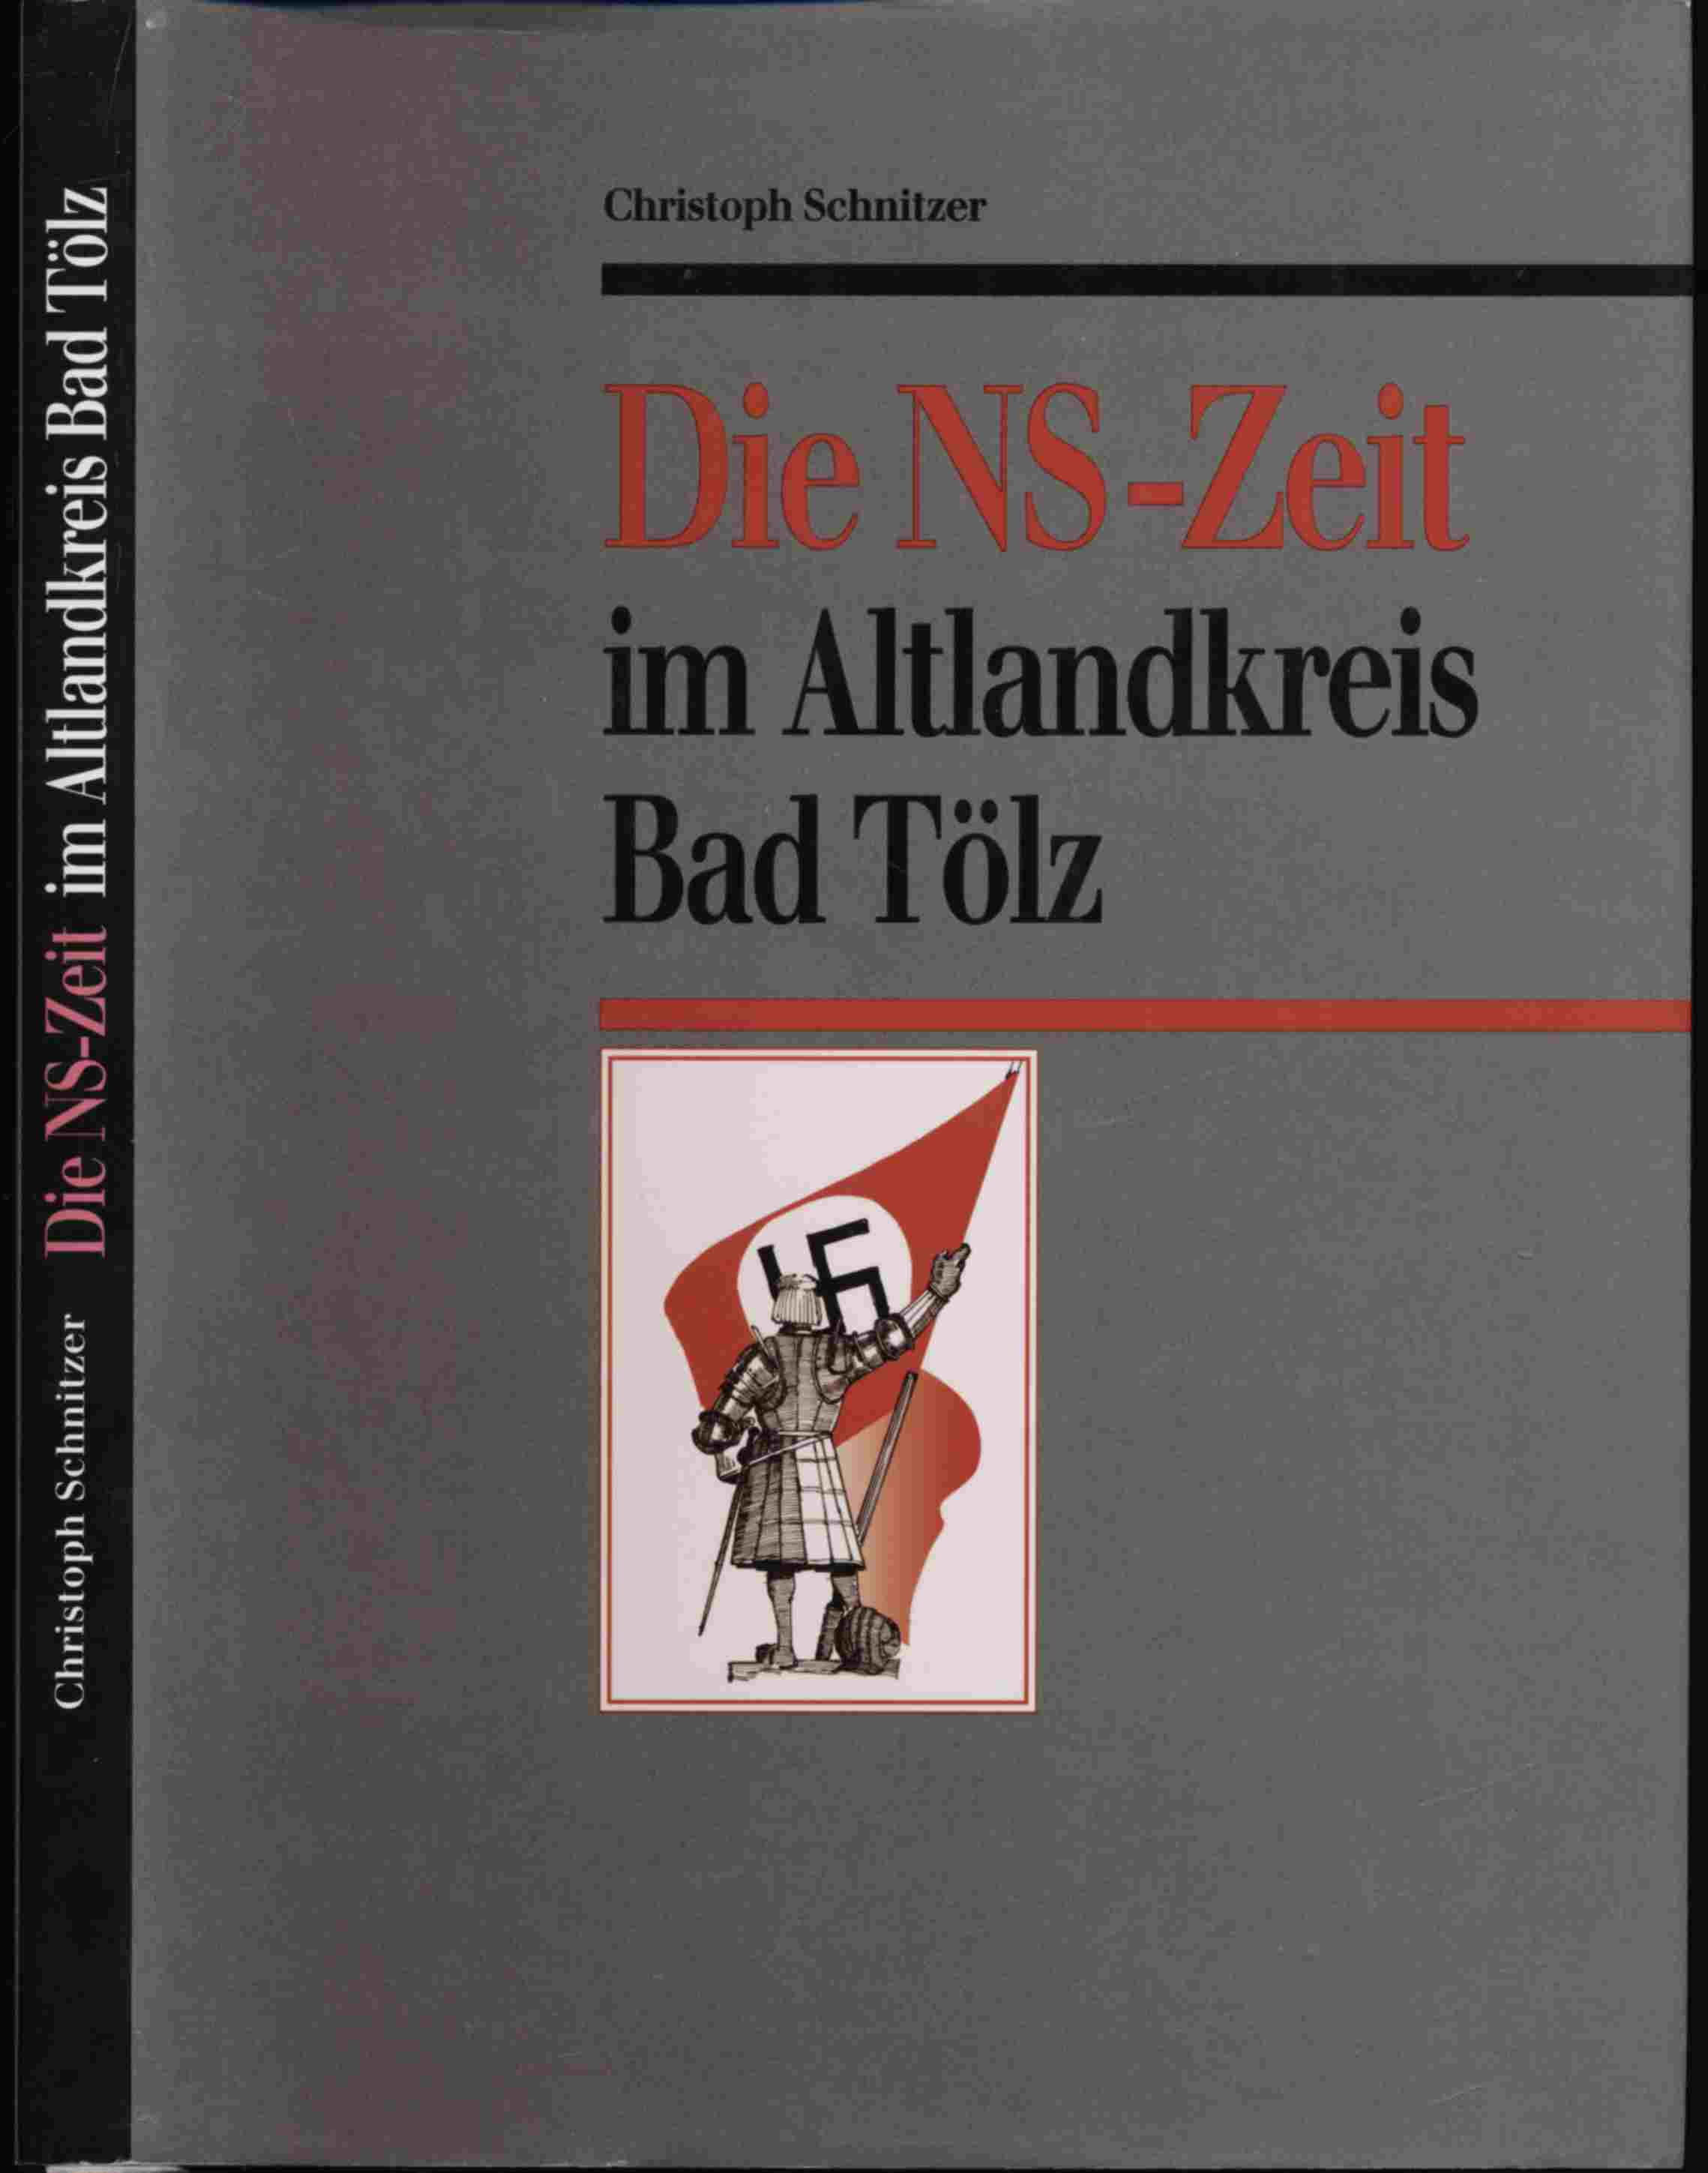 SCHNITZER, Christoph  Die NS-Zeit im Altlandkreis Bad Tölz. 